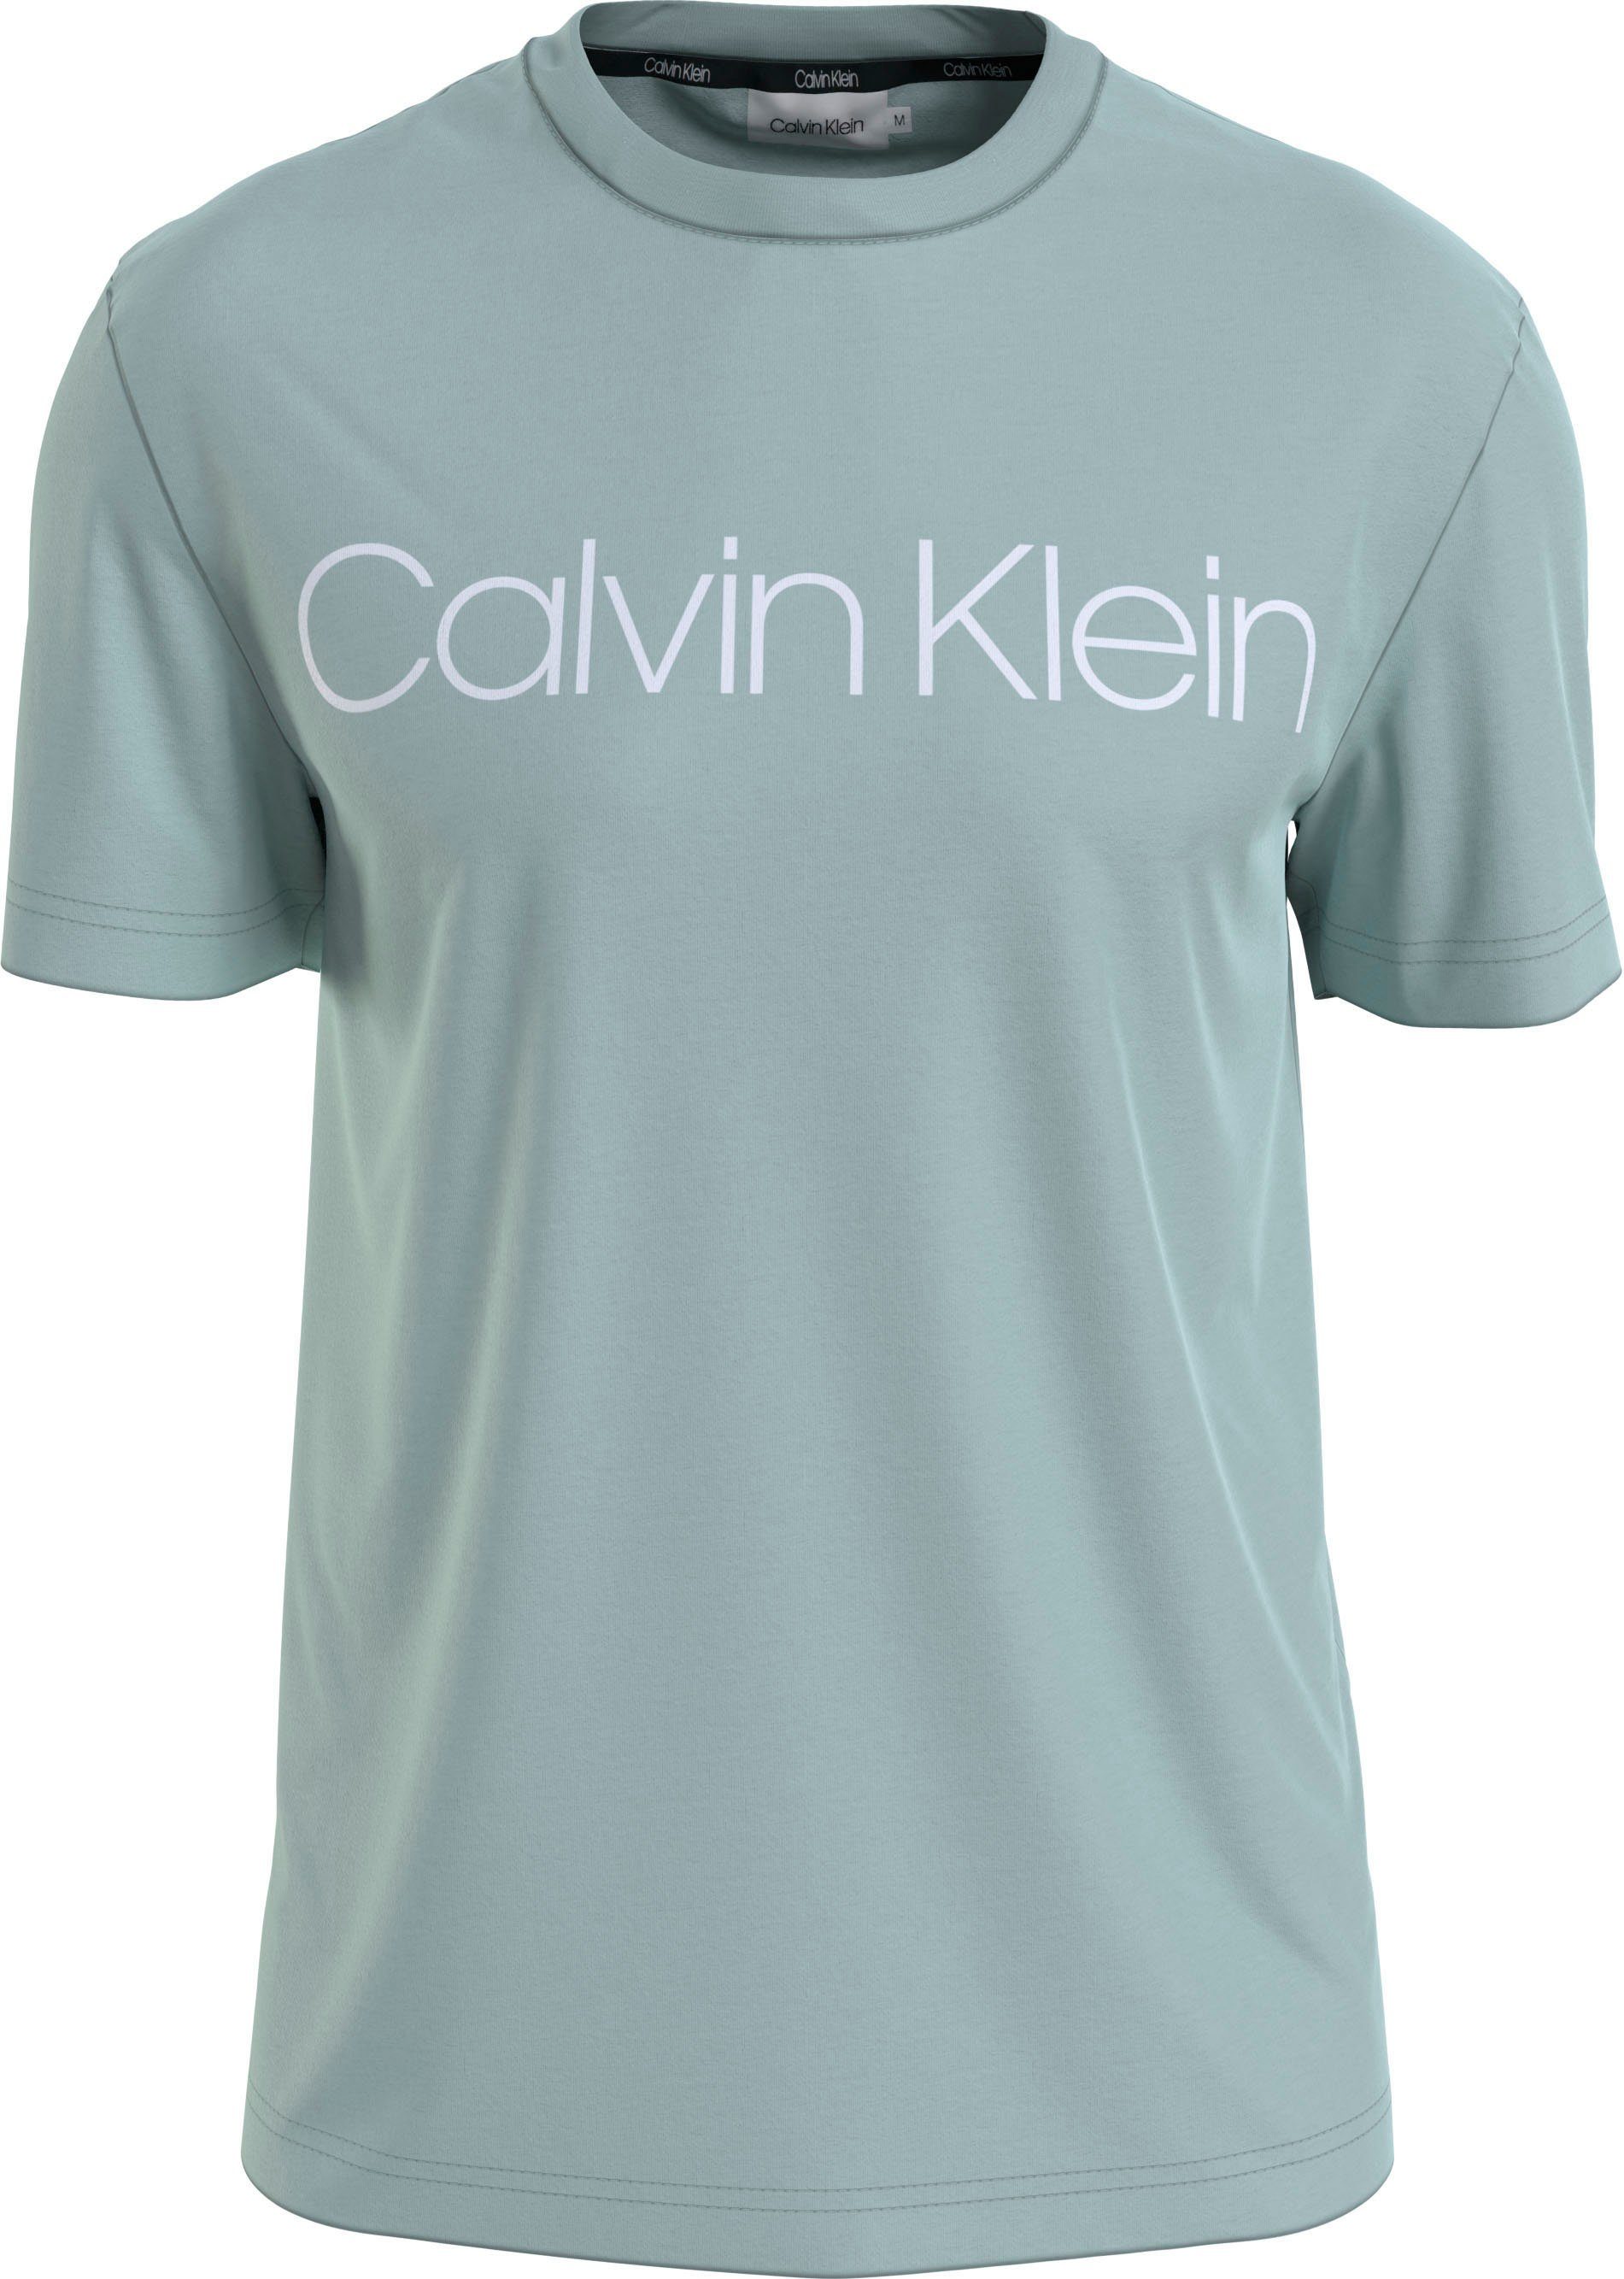 Calvin Klein COTTON Calvin Logodruck T-SHIRT Klein mit FRONT T-Shirt LOGO ghost gl